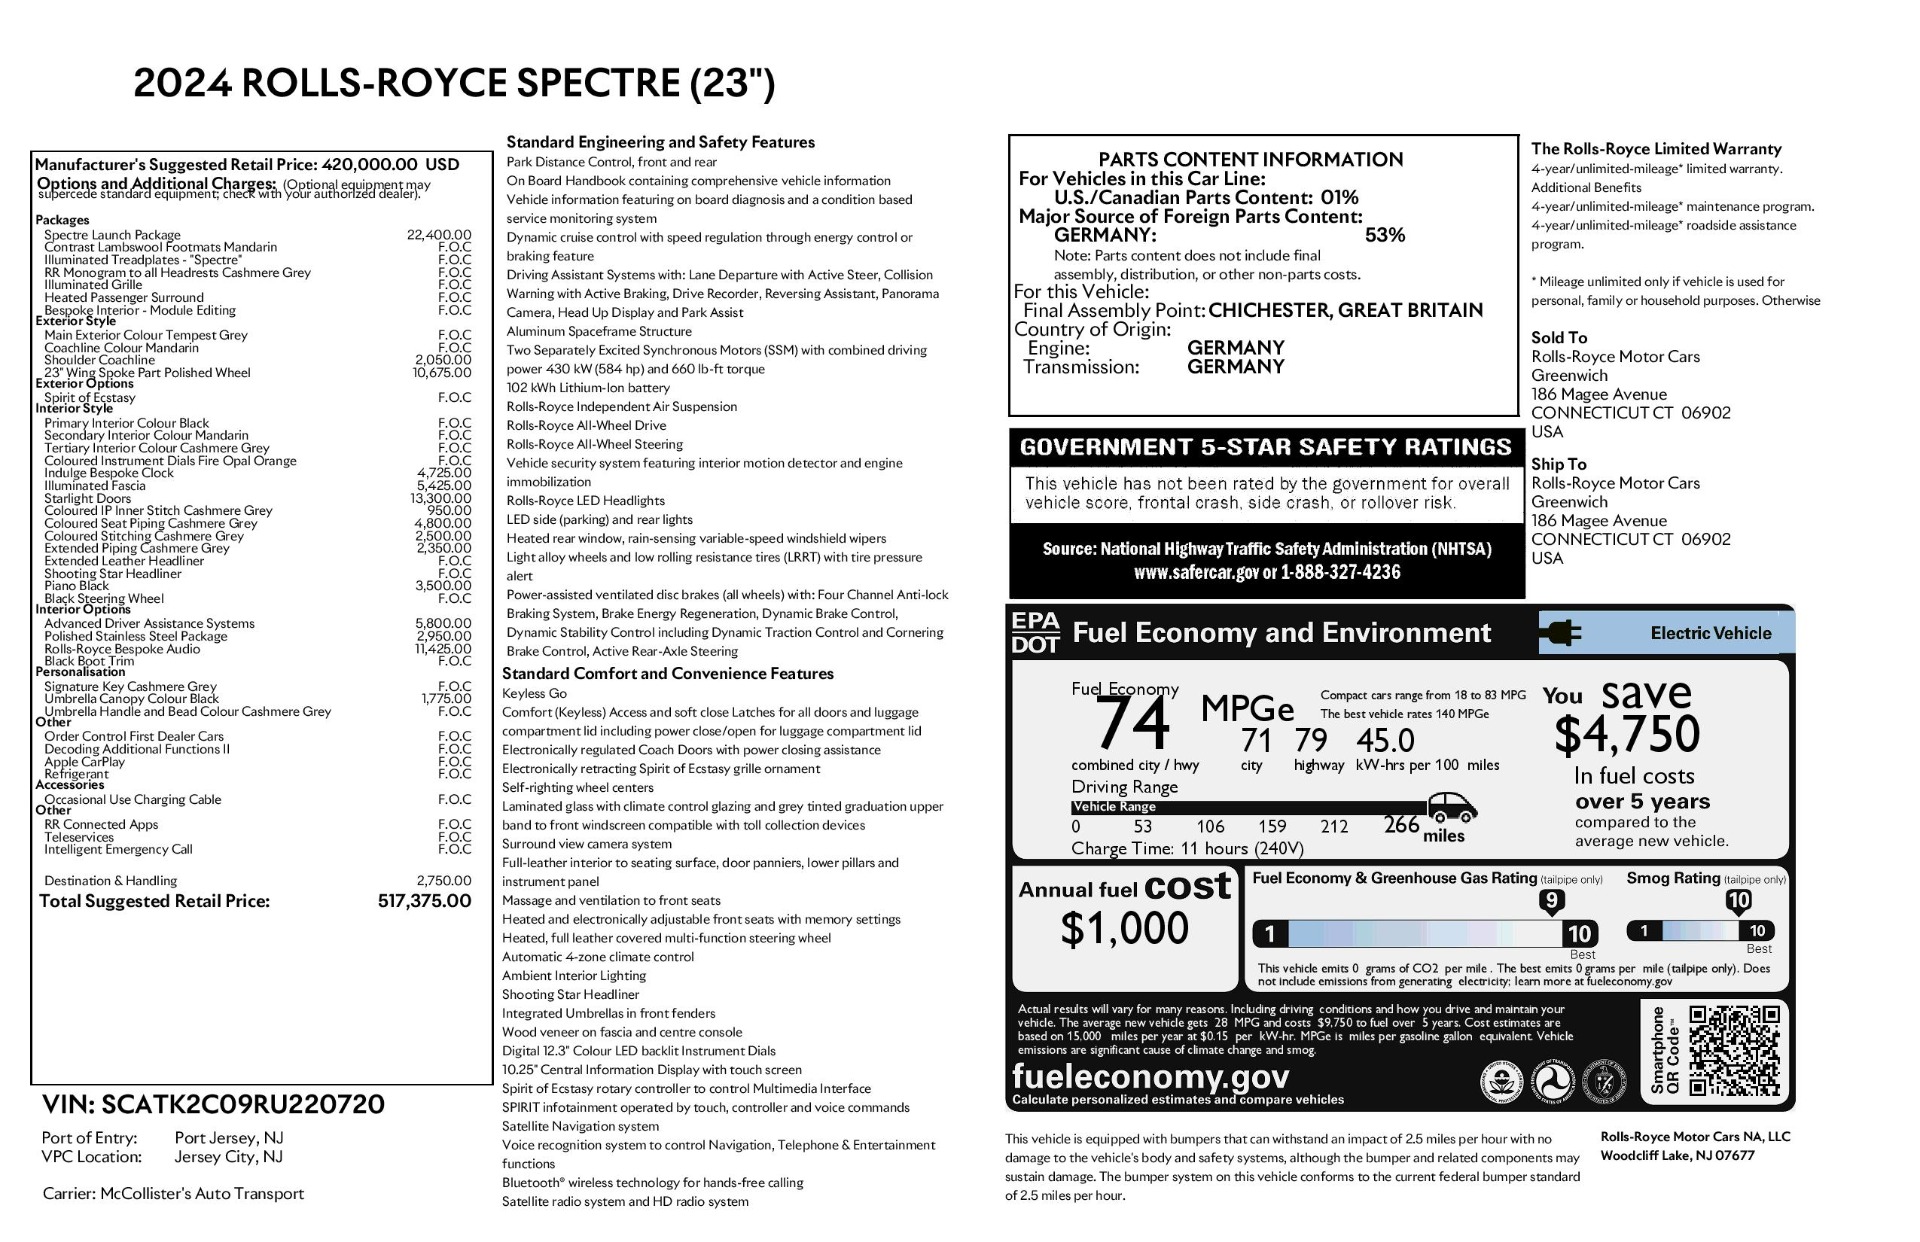 New 2024 Rolls Royce Spectre